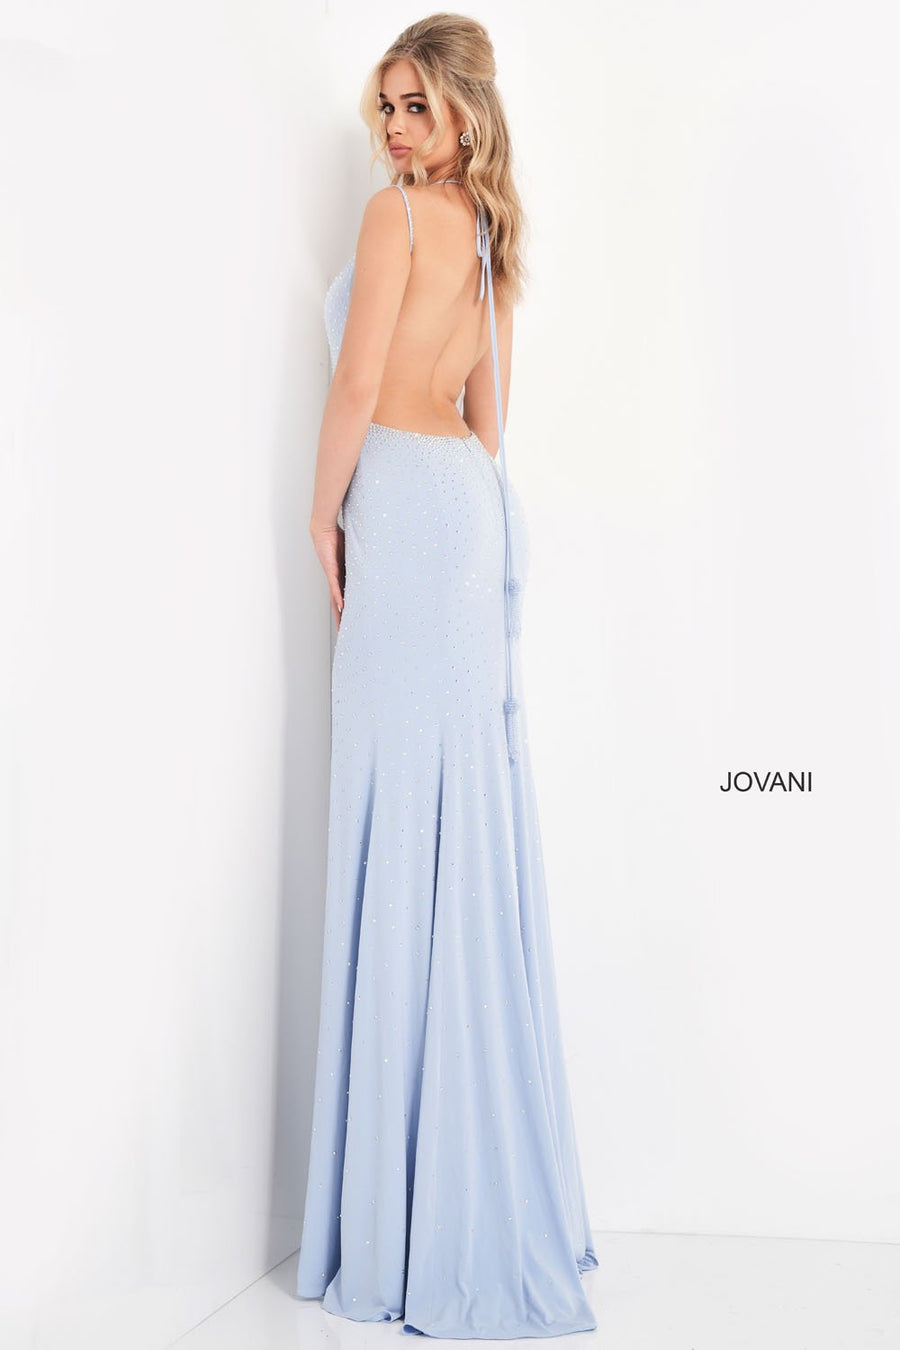 Jovani 06209 Dresses